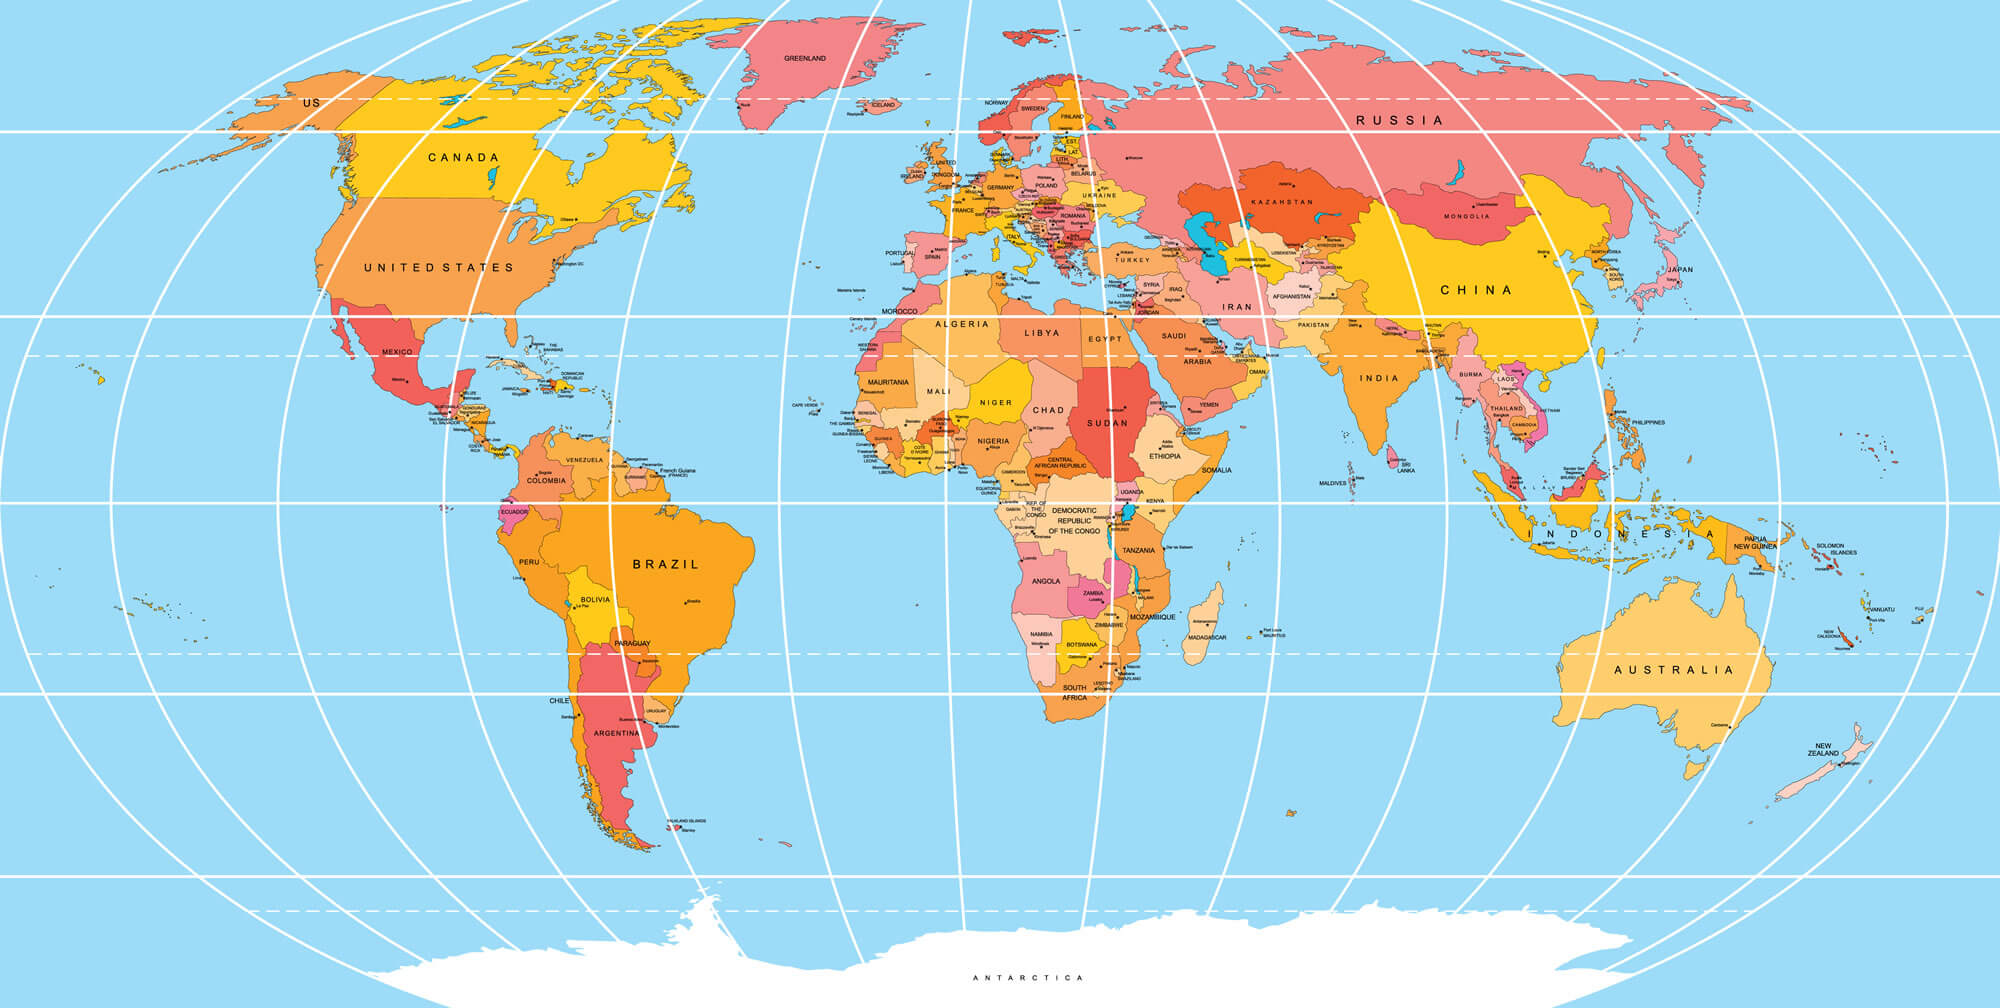 World Map in Yiddish Language